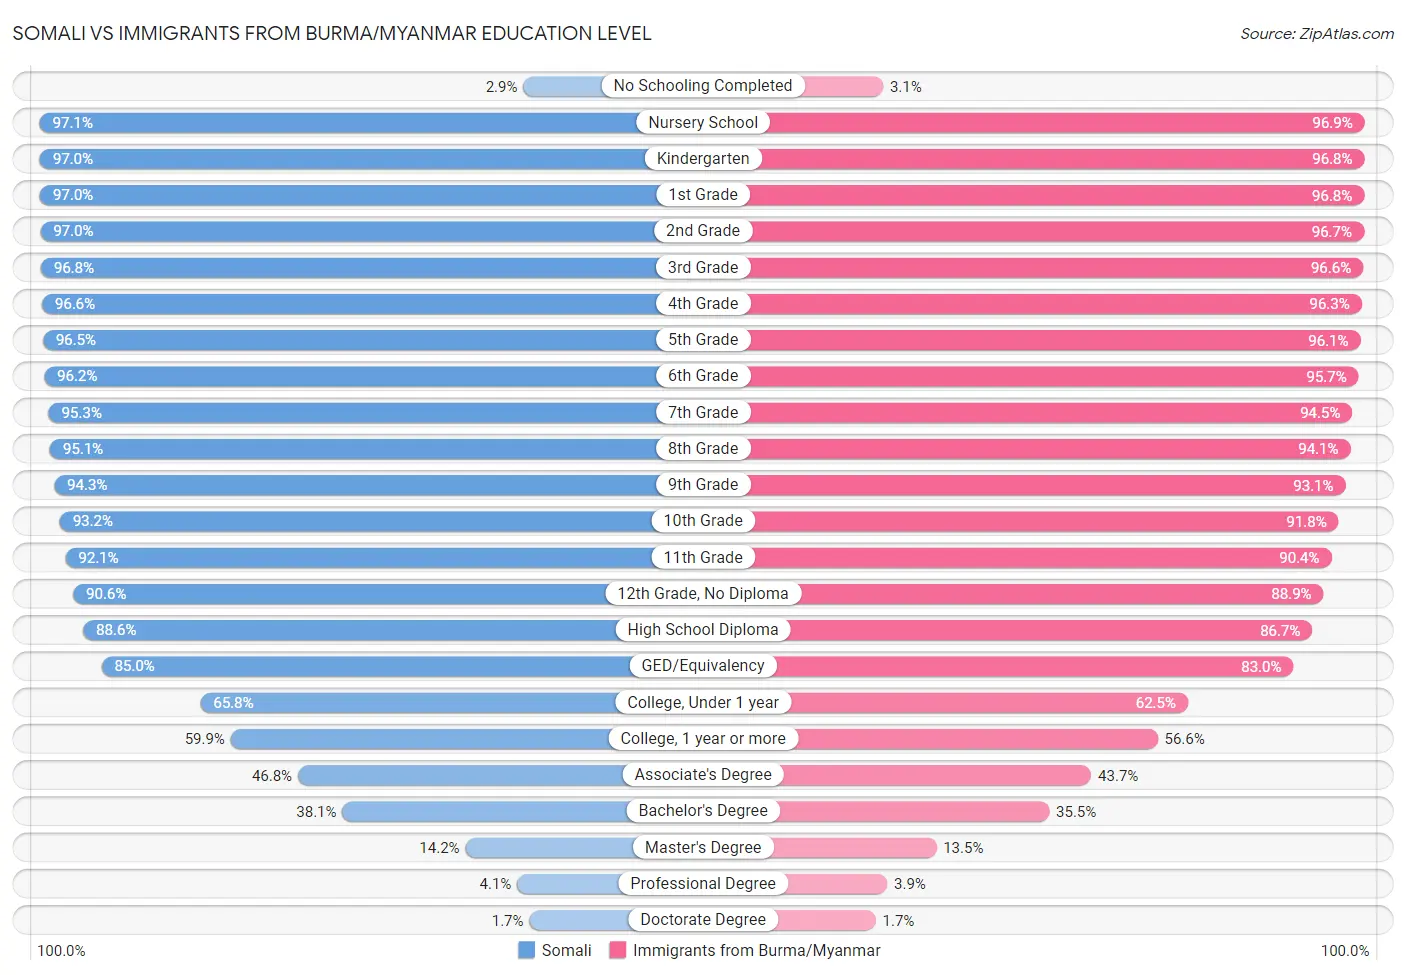 Somali vs Immigrants from Burma/Myanmar Education Level